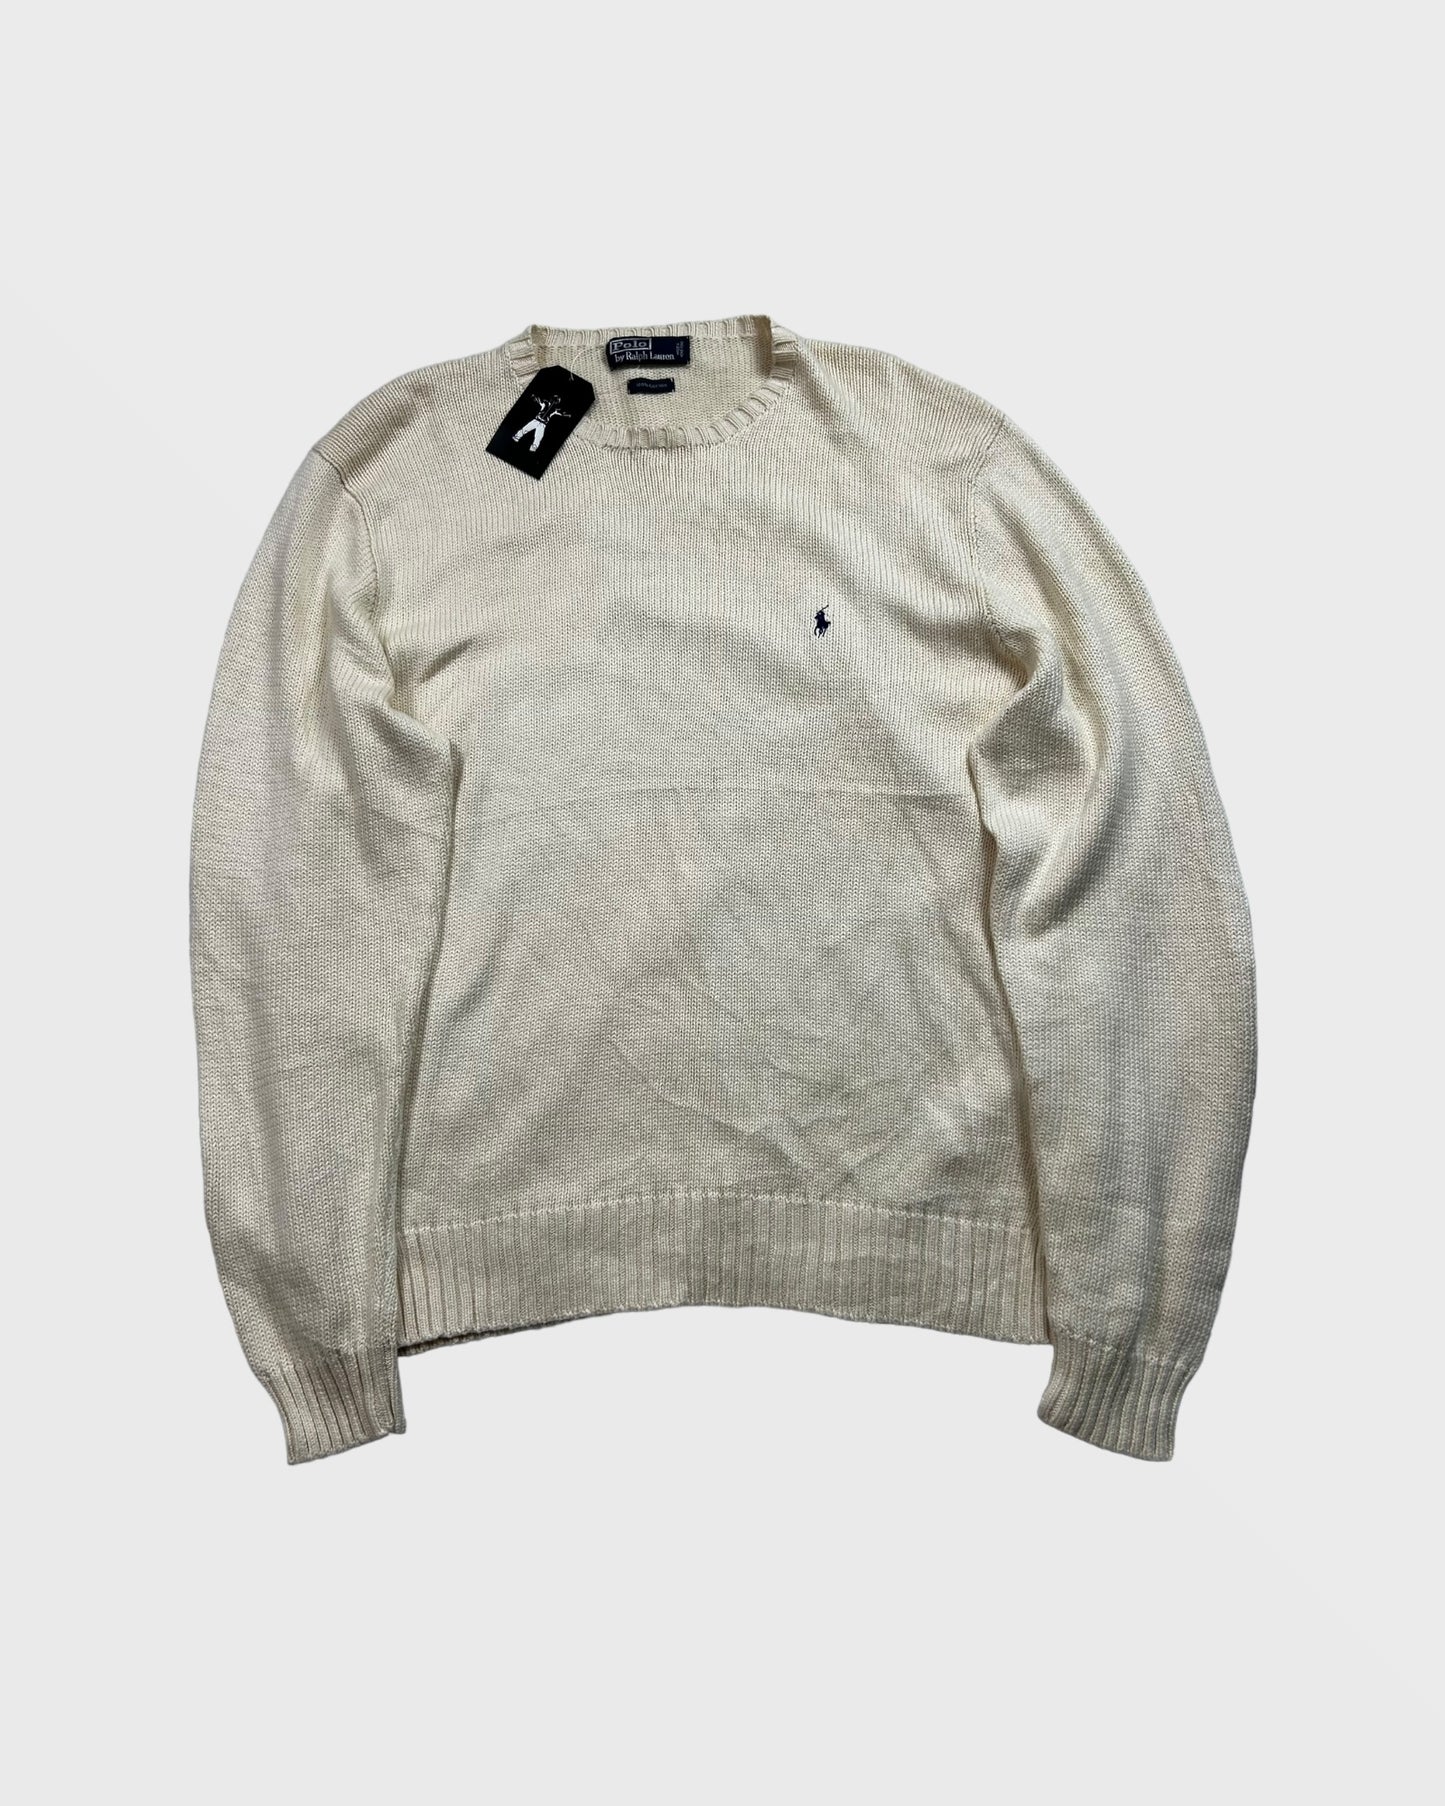 Ralph Lauren knit / sweater (XL)